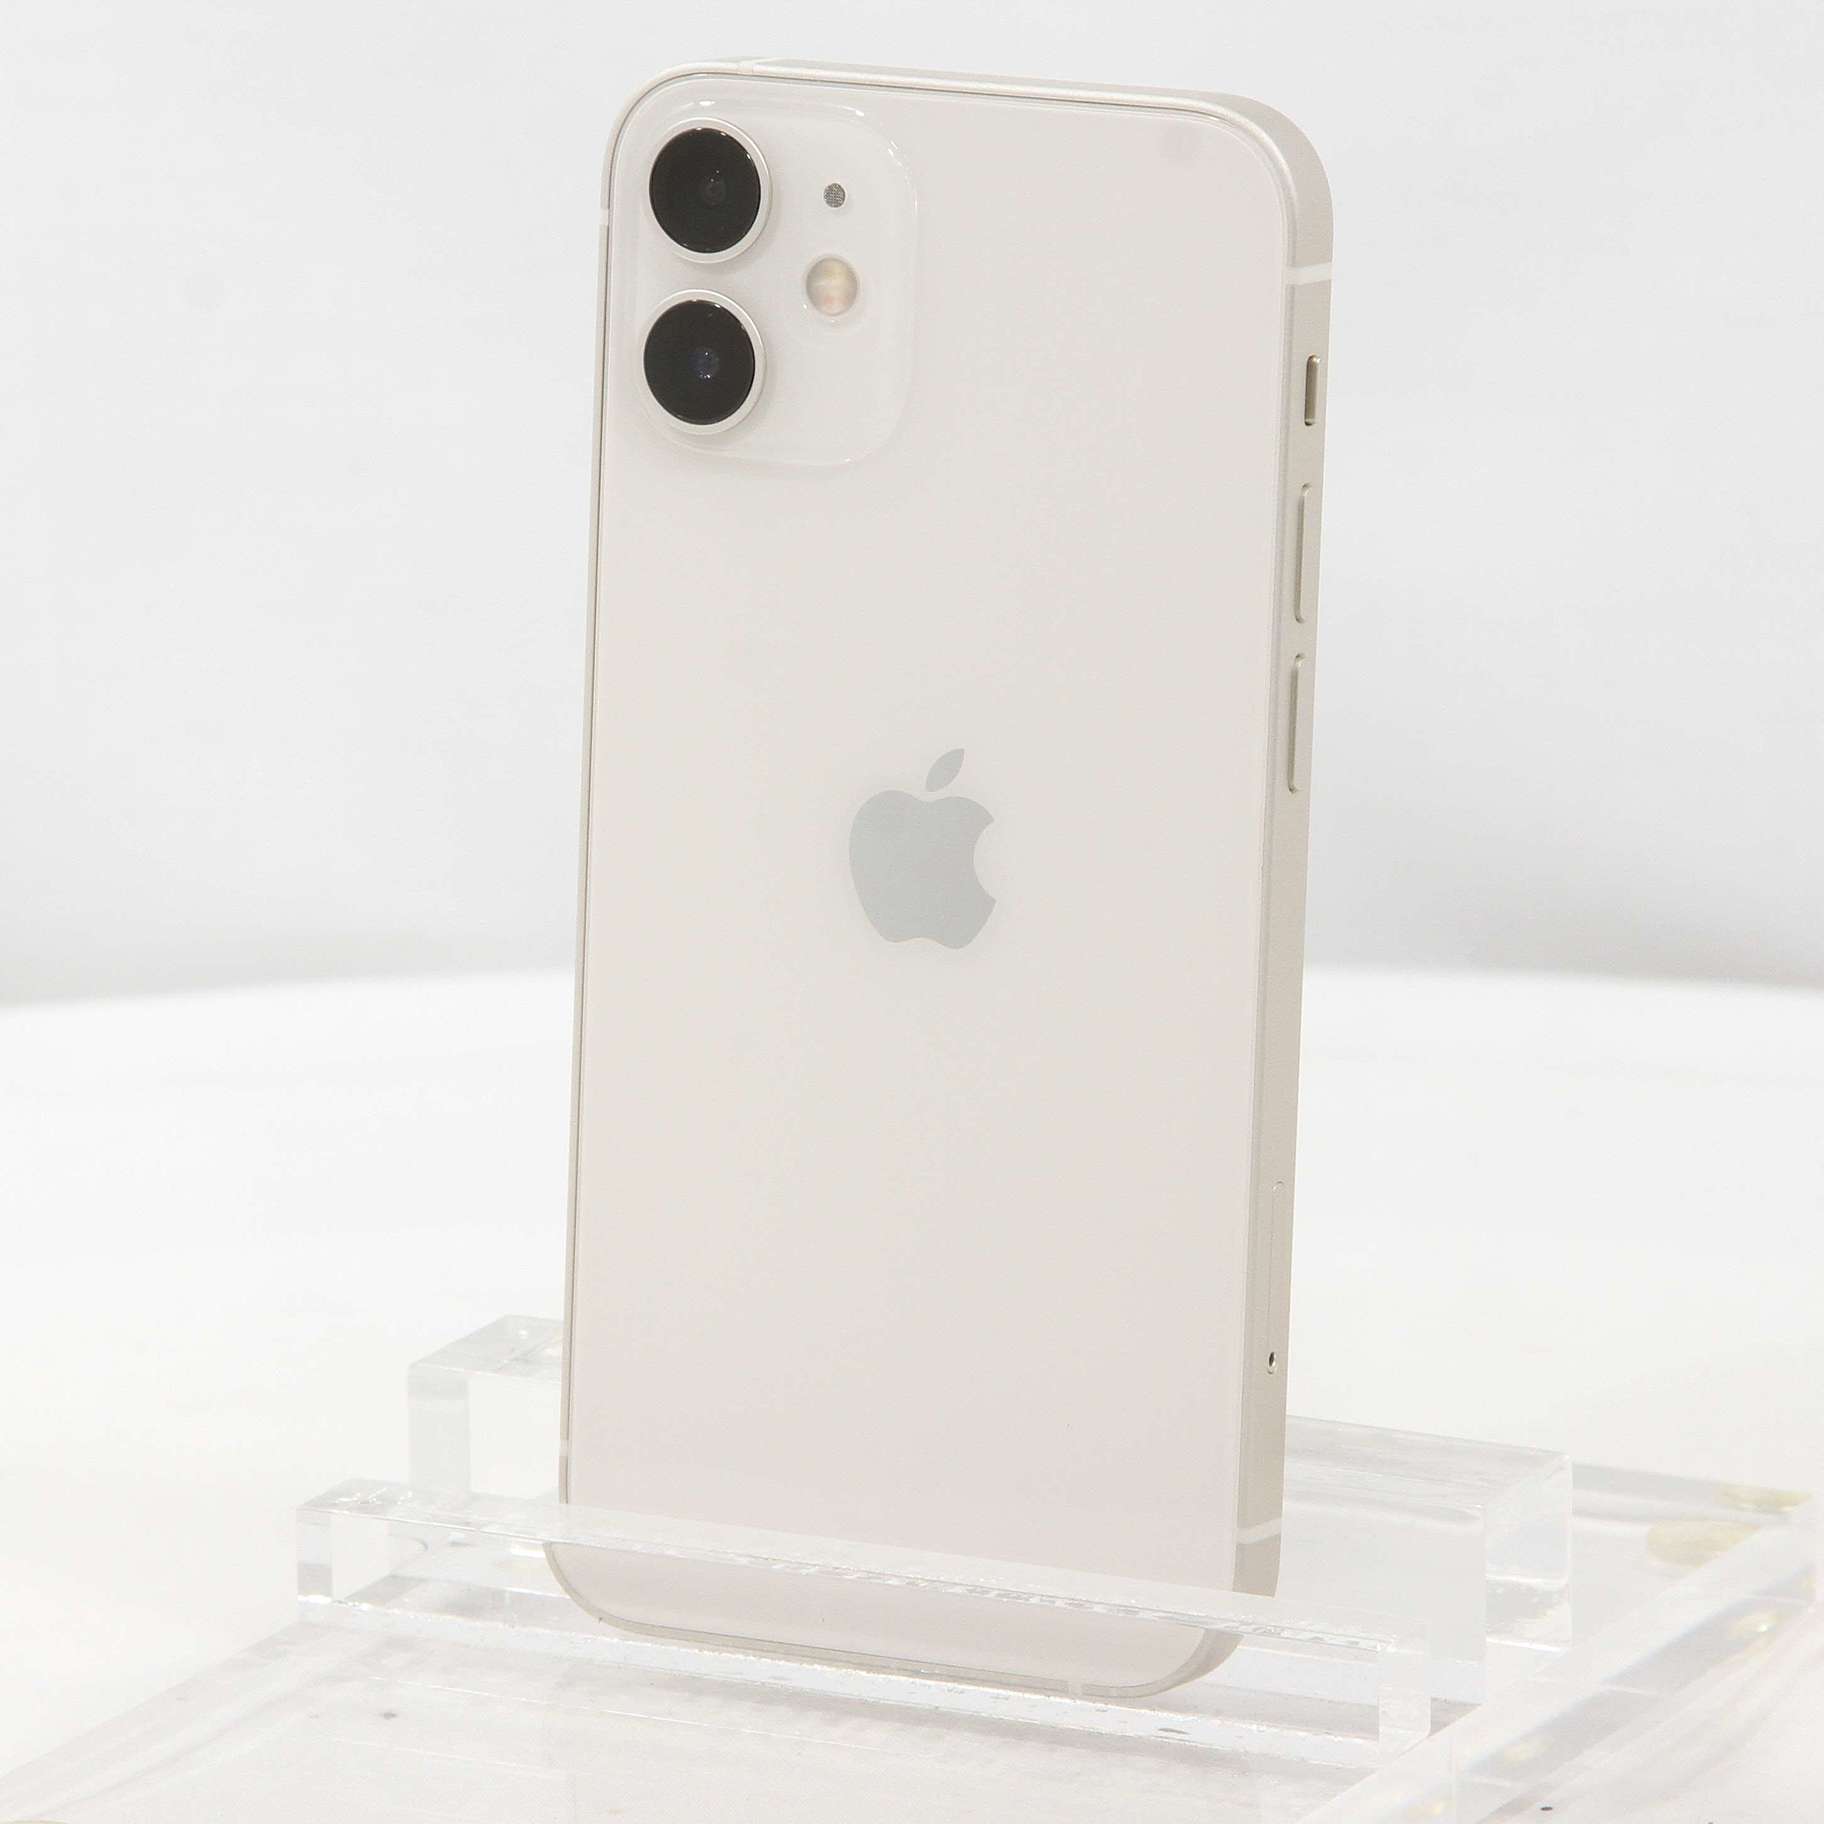 予約早割[美品]Apple iPhone12 mini 128GB ホワイト おまけ付き スマートフォン本体